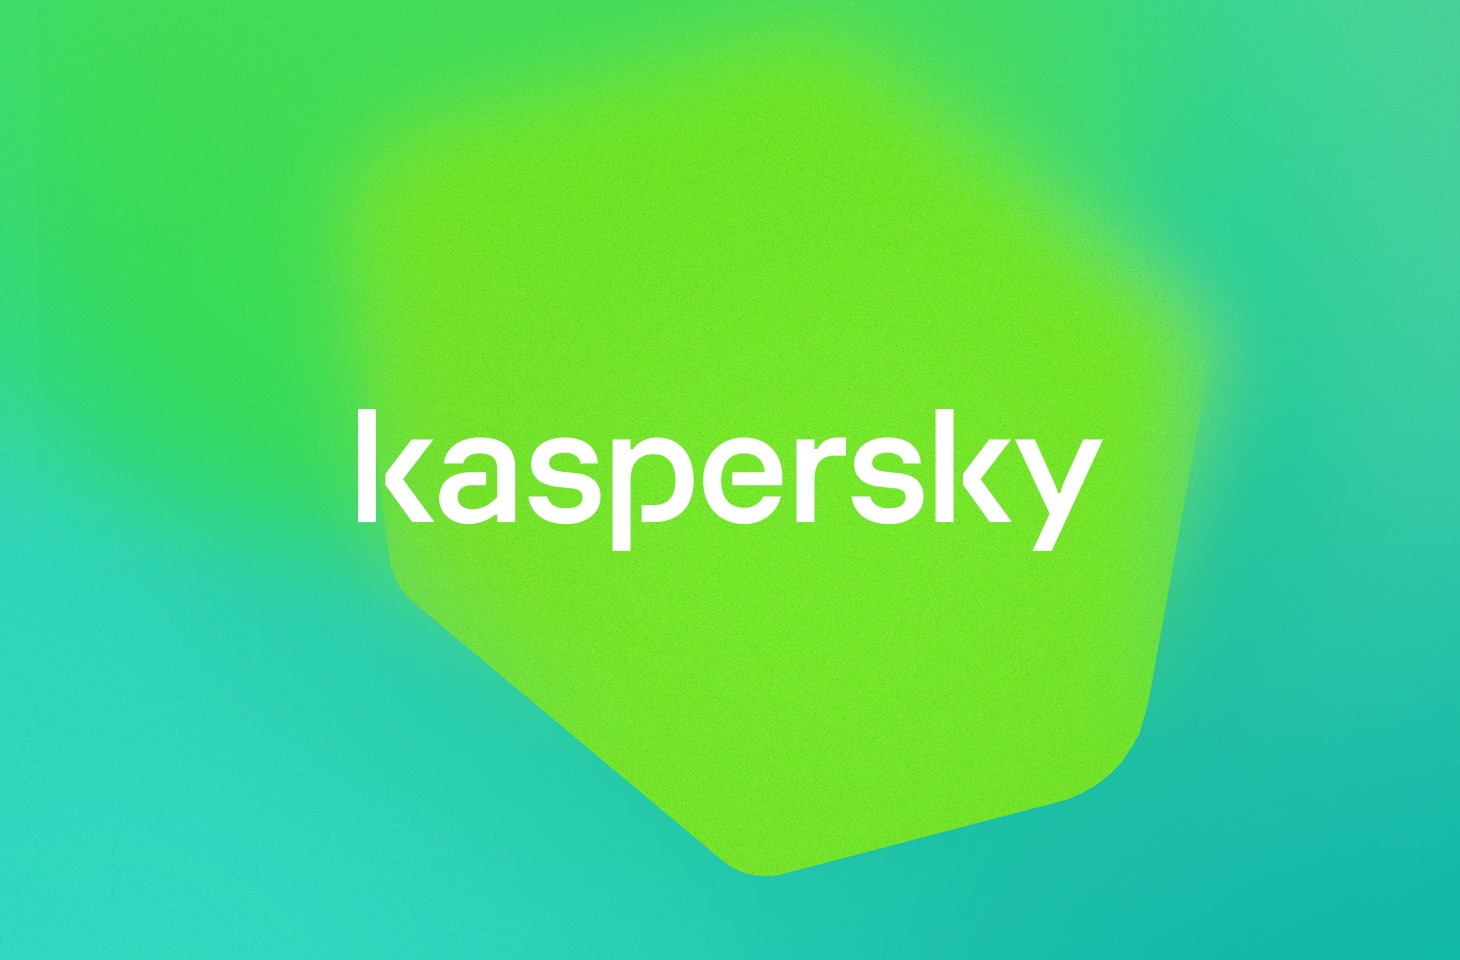 Kaspersky невозможно установить соединение физическая ошибка kaspersky